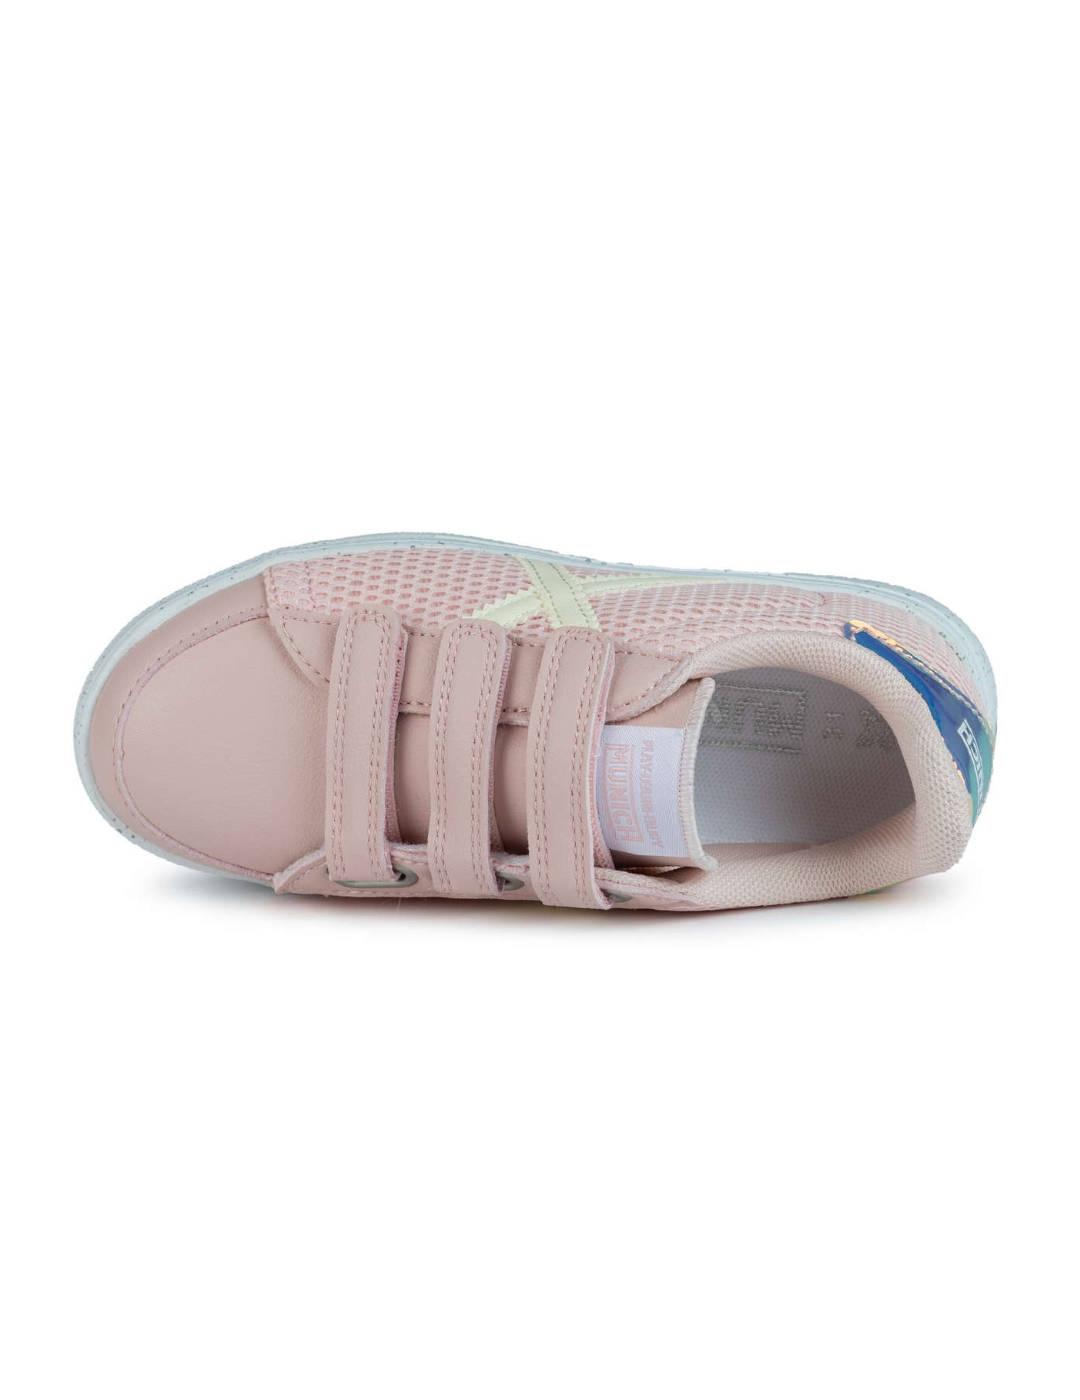 Zapatillas Munich Mini Rete rosa/beige con velcro para niña